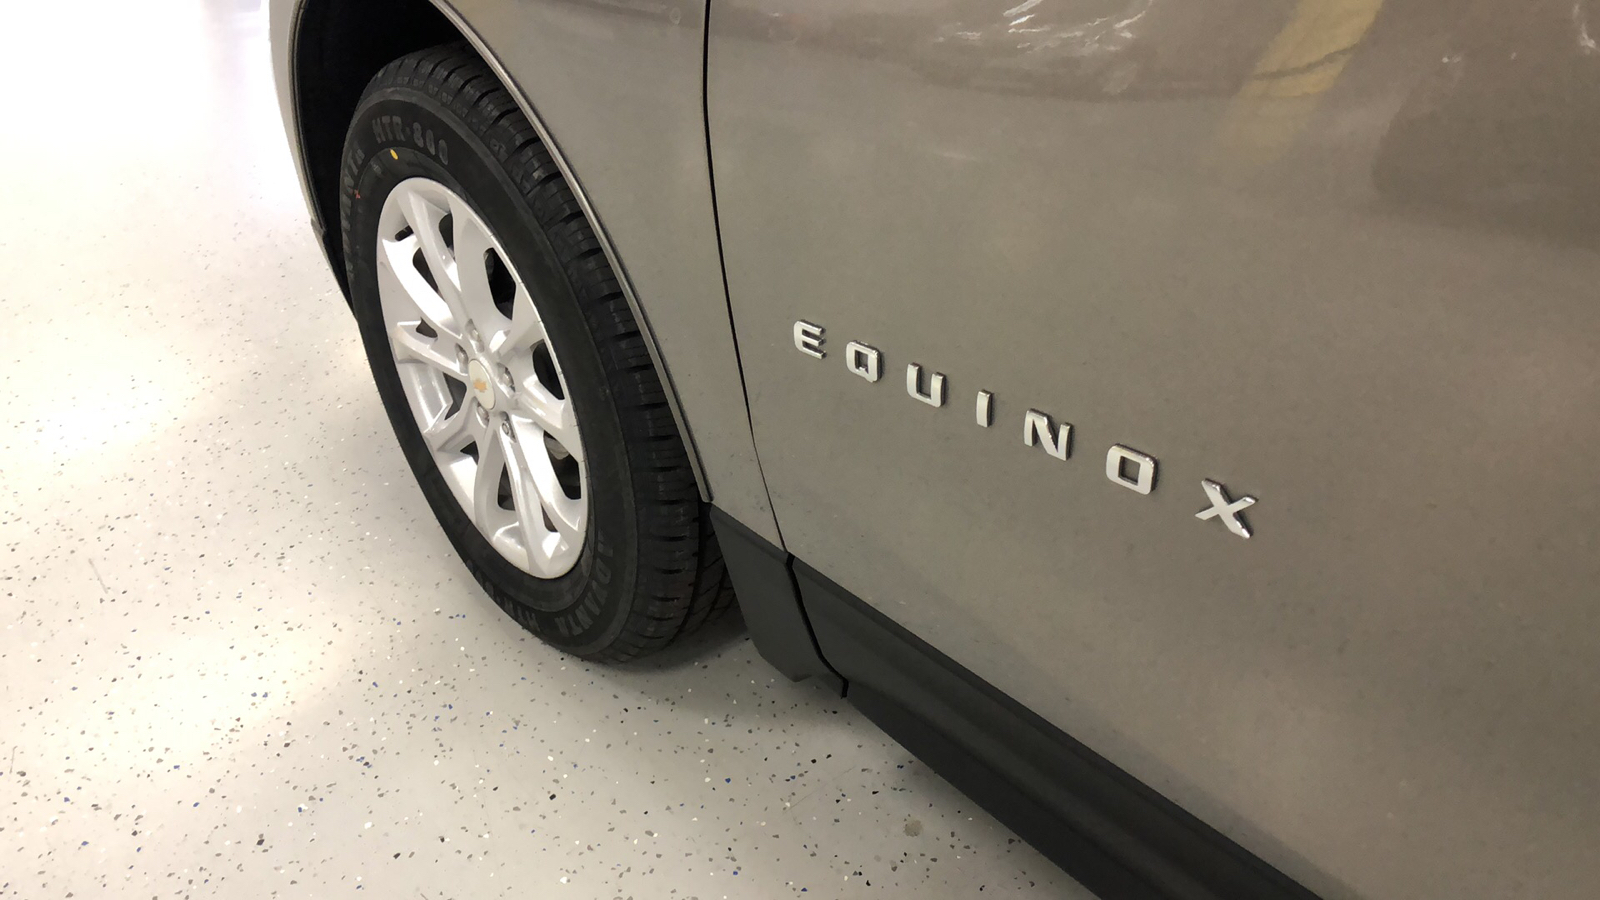 2018 Chevrolet Equinox LT 22